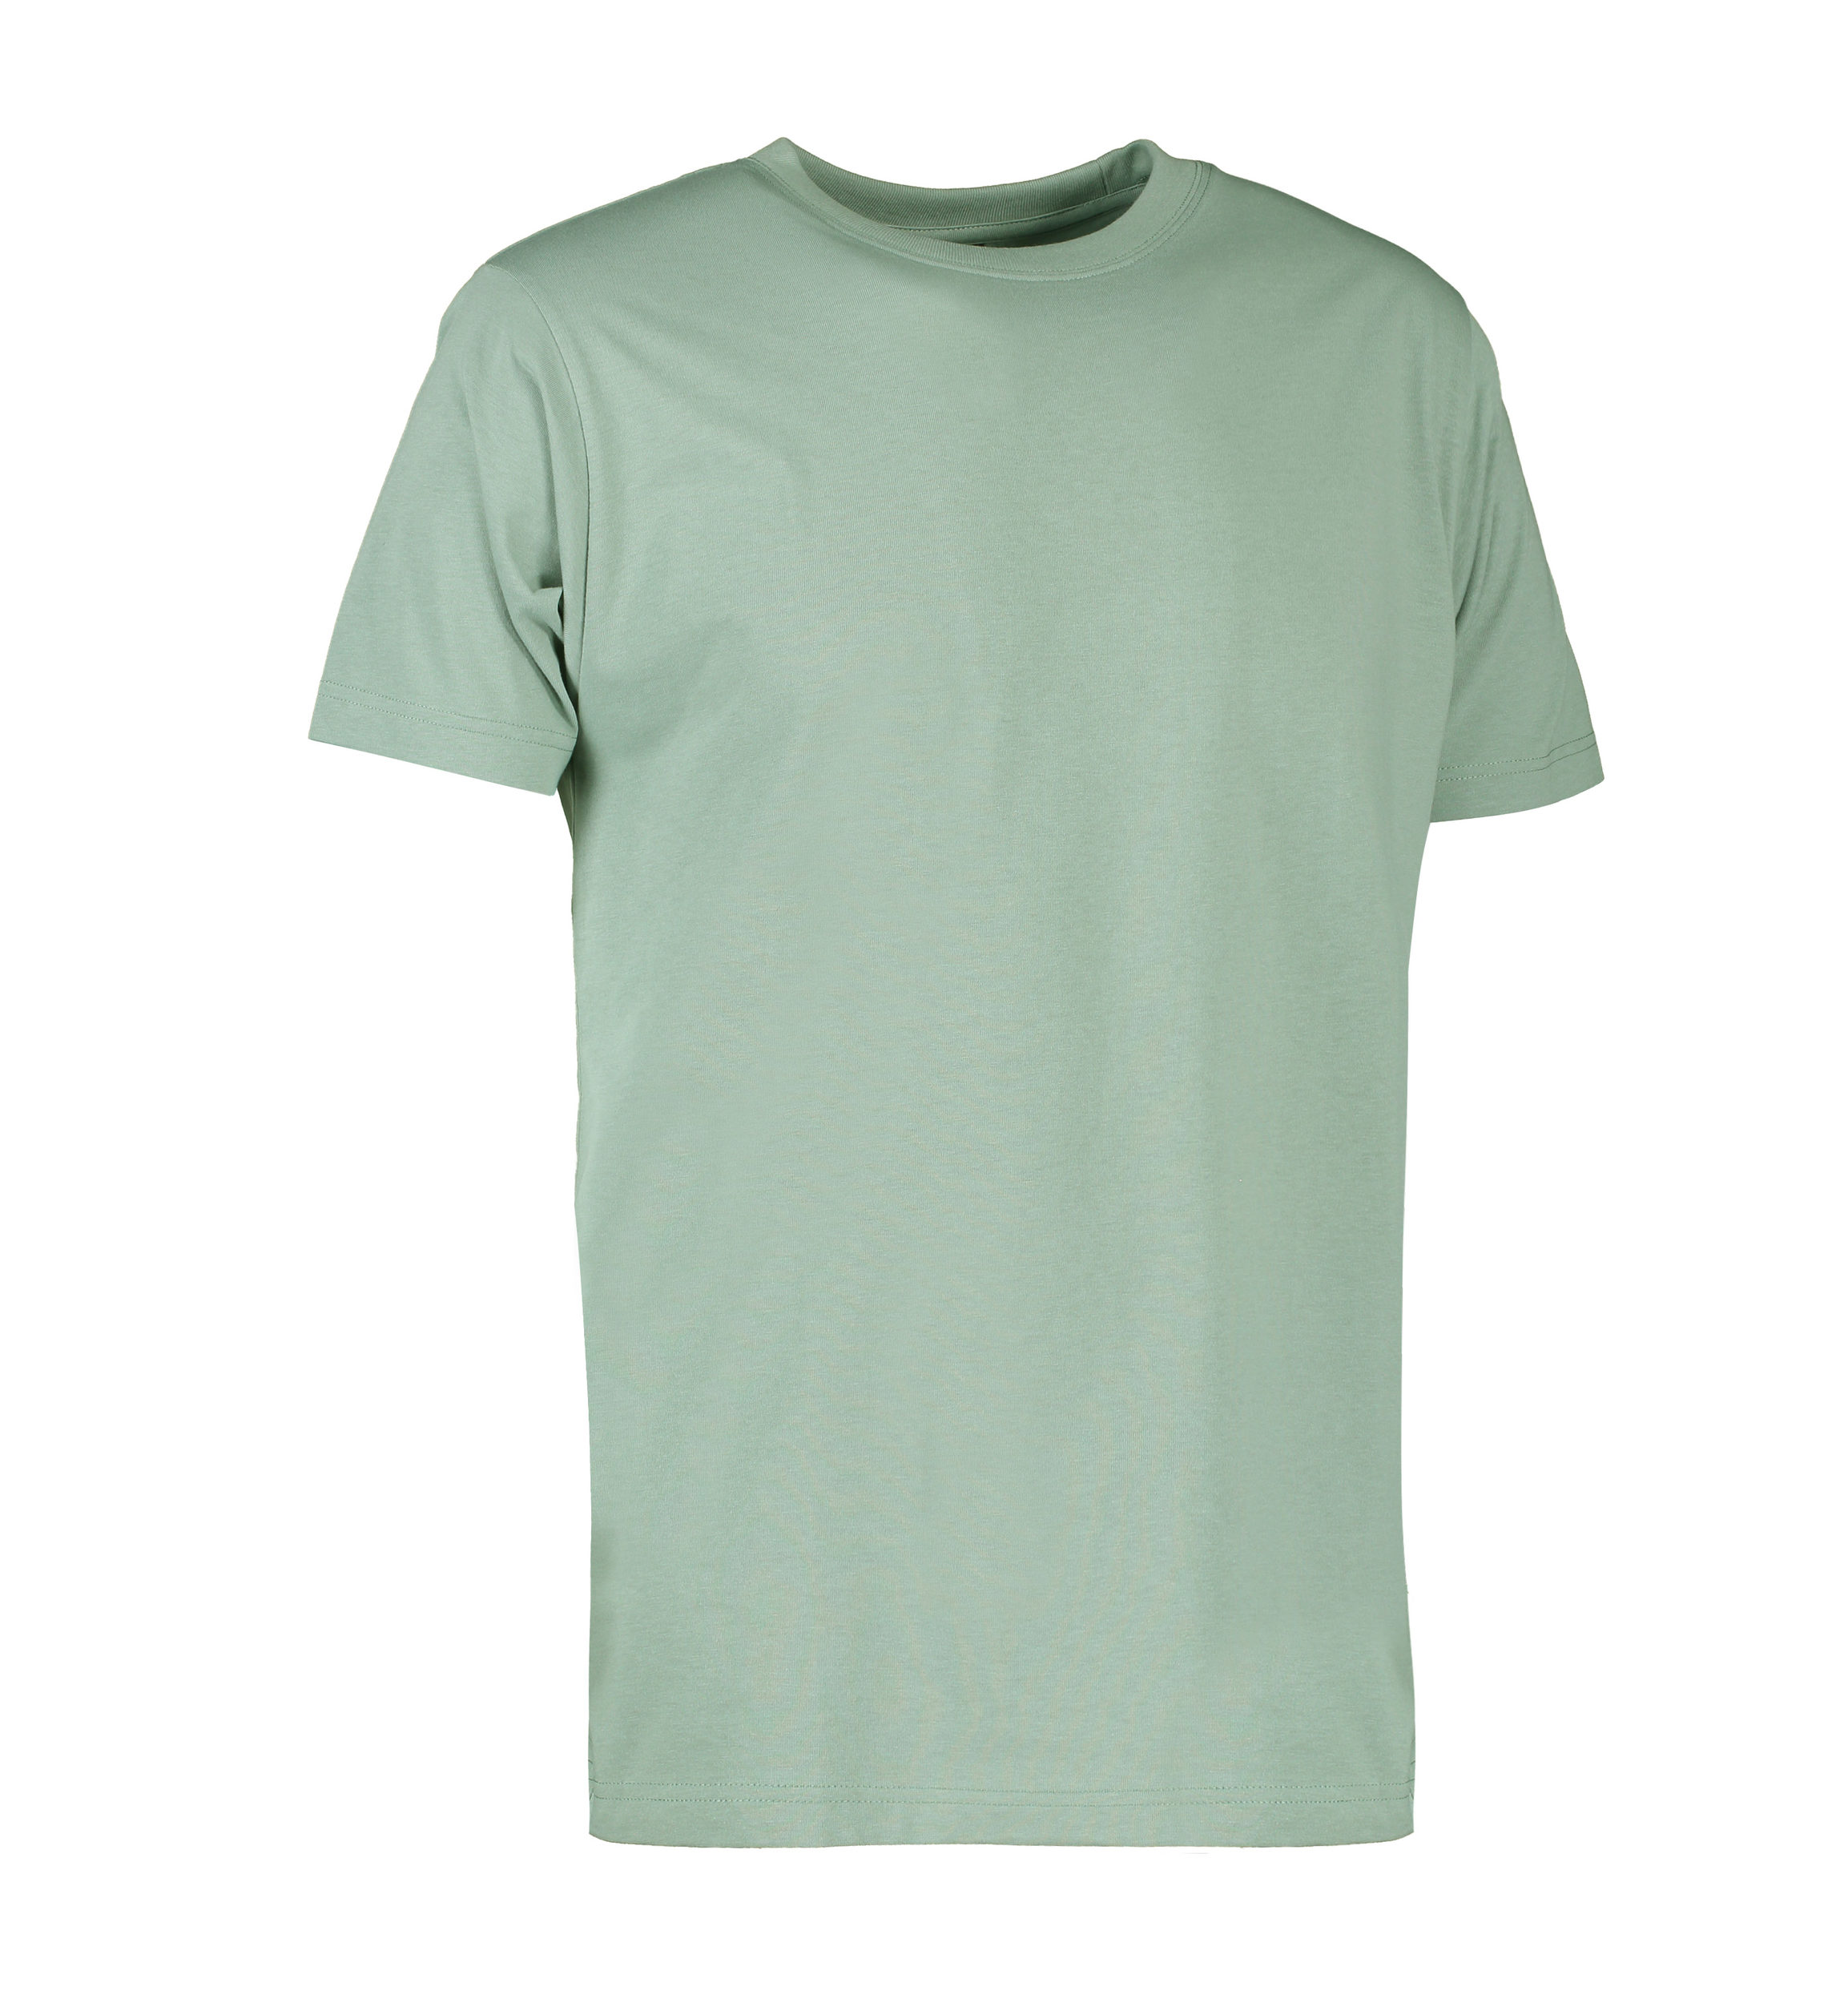 Se Slidstærk t-shirt i støvet grøn til mænd - L hos Sygeplejebutikken.dk